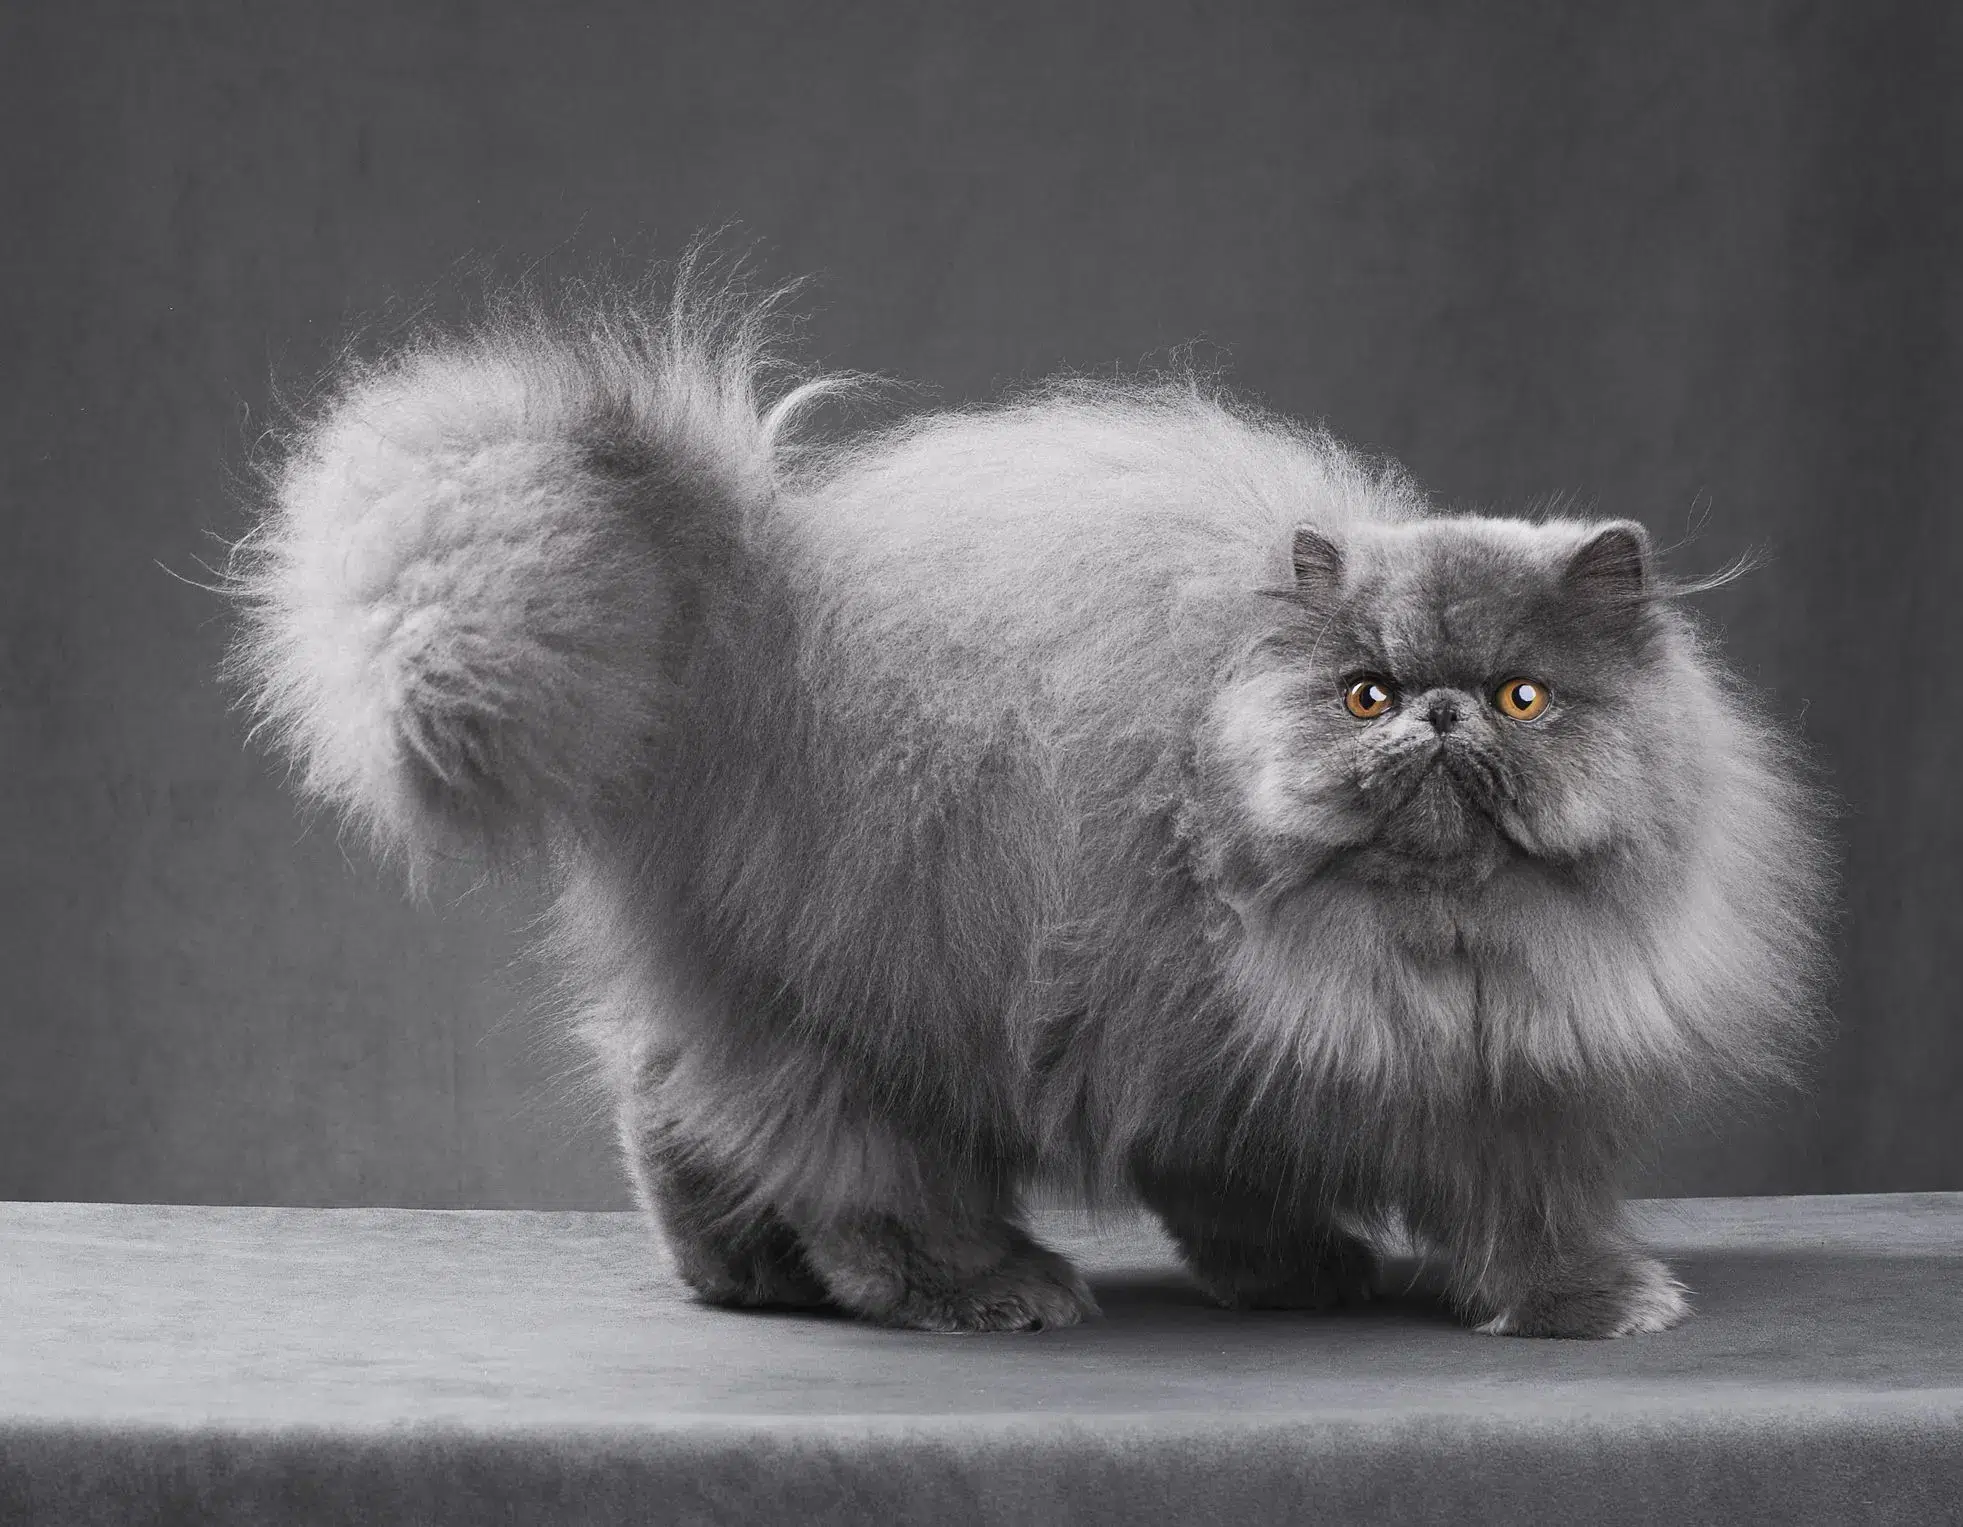 القط الشيرازي (Persian cat)